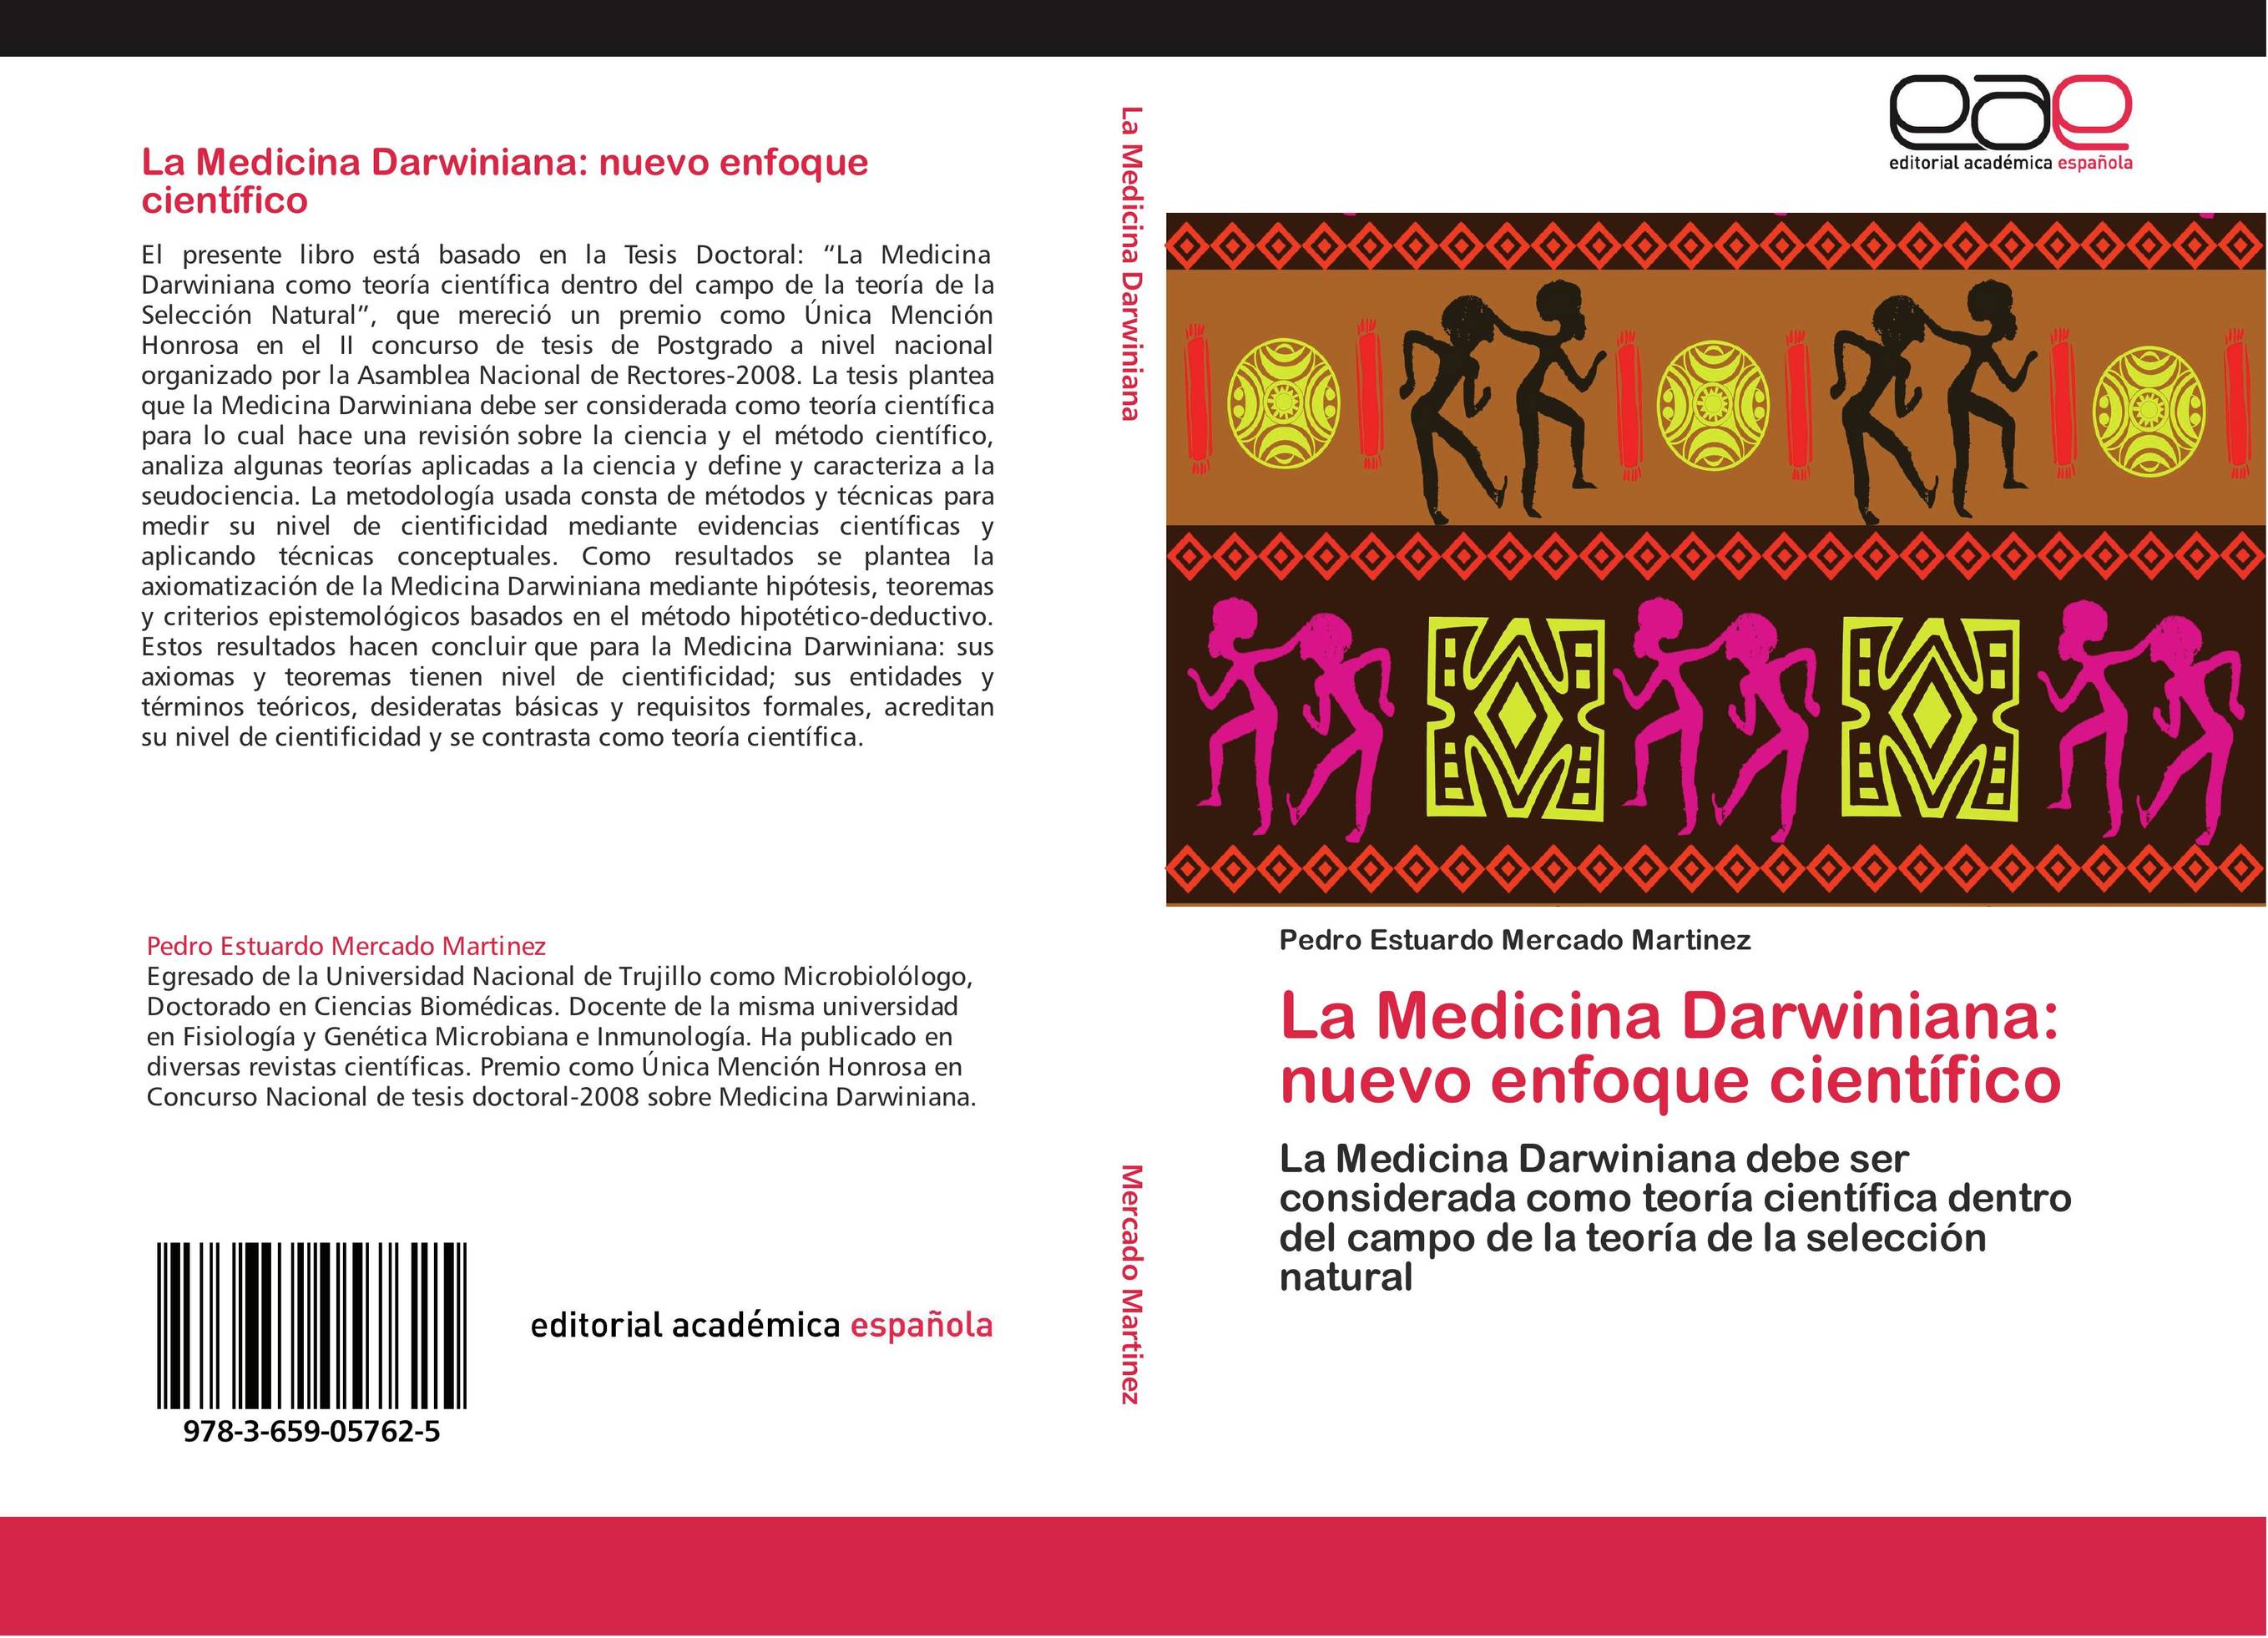 La Medicina Darwiniana: nuevo enfoque científico